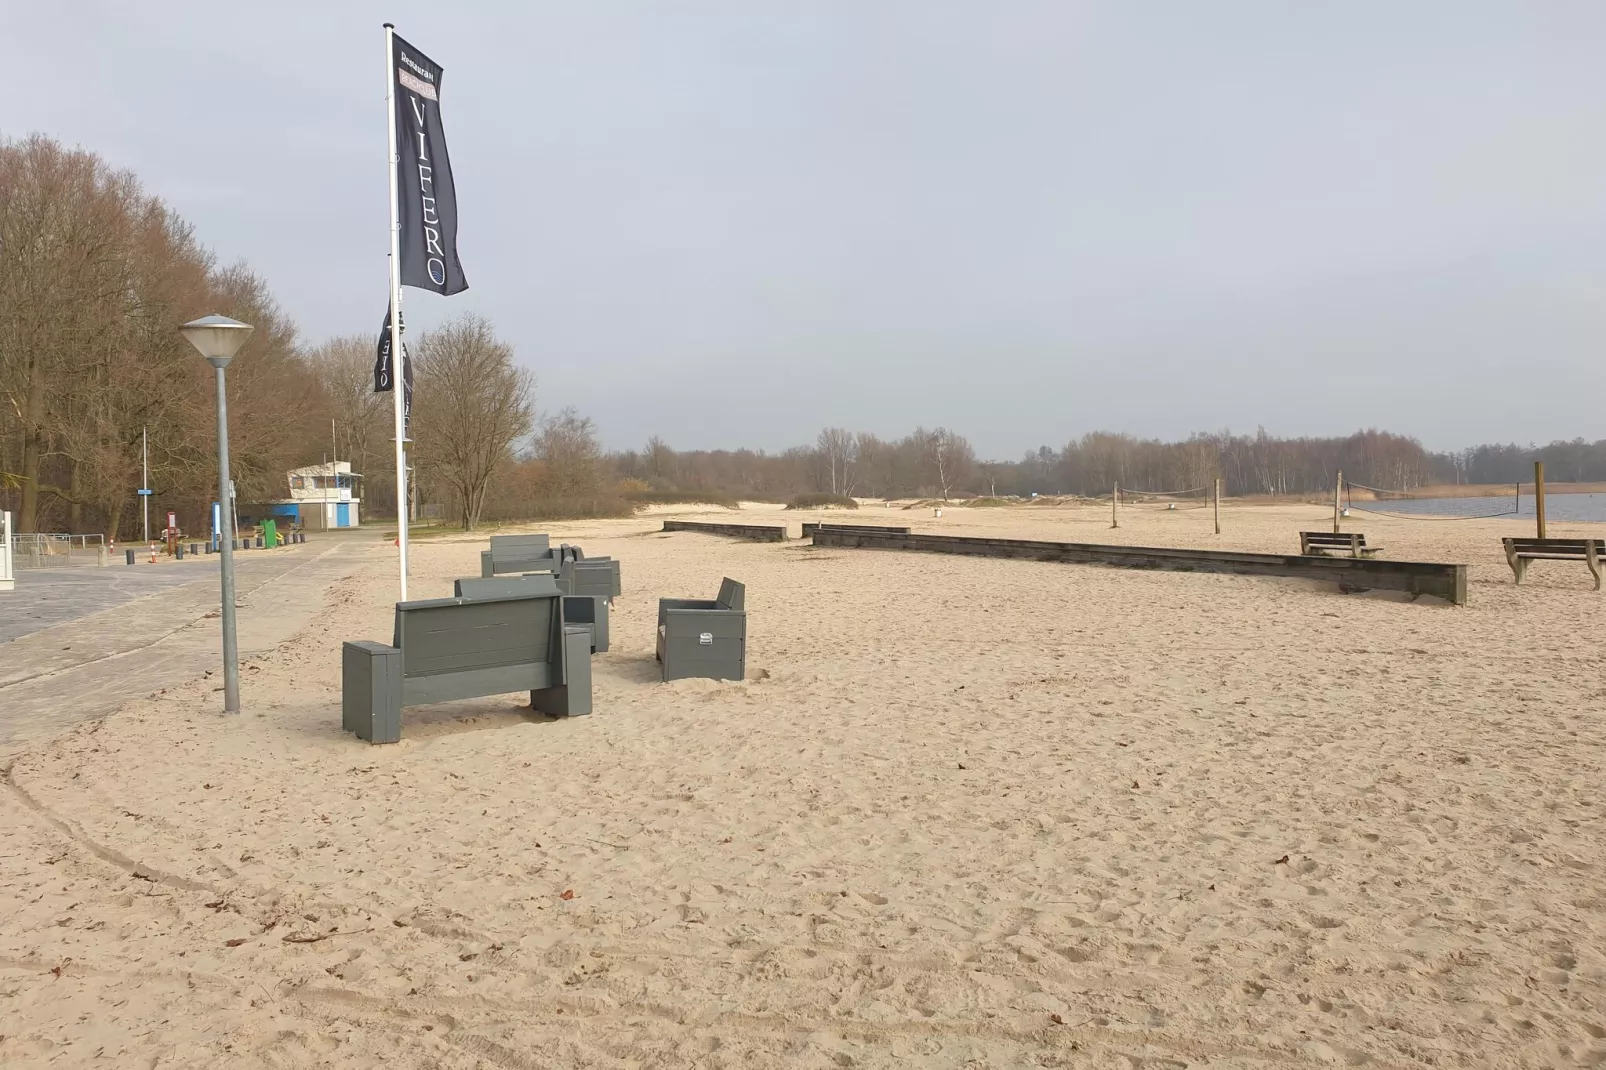 Groepswoning 2-11 personen aan het Zuidlaardermeer in Groningen met sloep optie-Gebieden zomer 5km